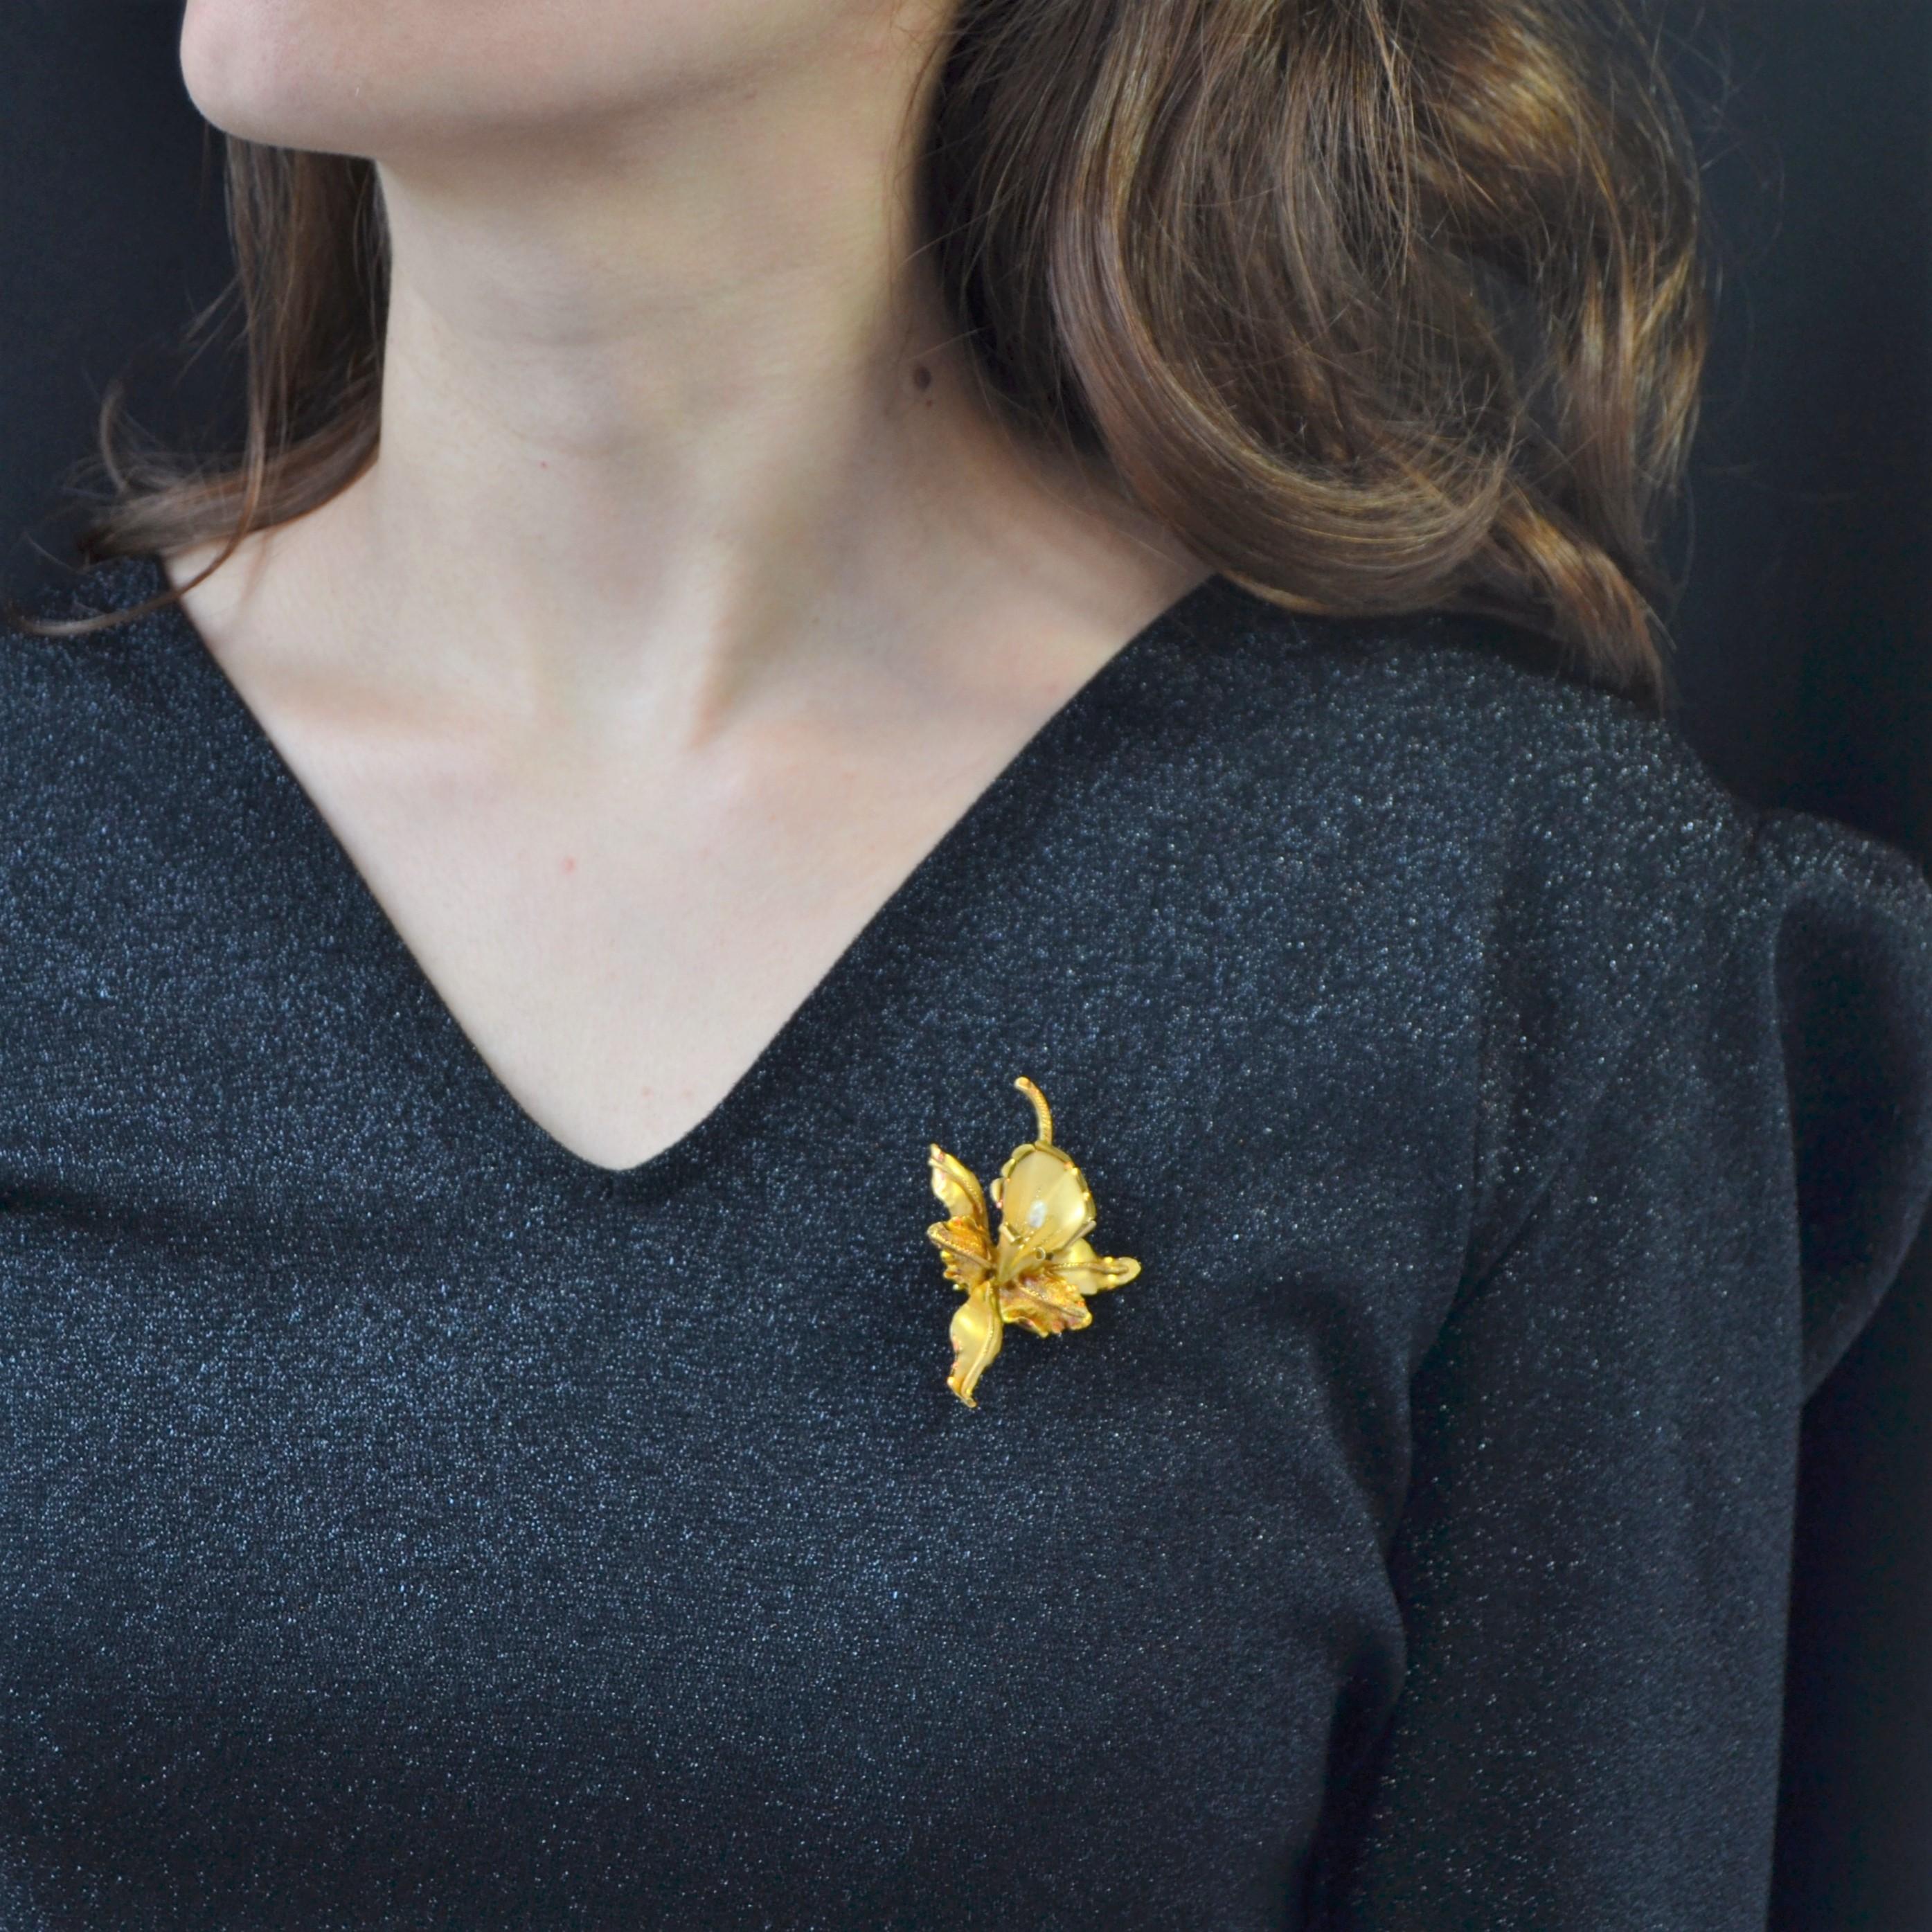 Brosche aus 18 Karat Gelbgold, eigene Punzierung.
Eine Lilienblume darstellend, präsentiert diese ästhetische Brosche aus antikem Gold ein Spiel von Ausführungen des Materials: gebürstet, ziseliert, glatt und strukturiert, ihm viel Erleichterung